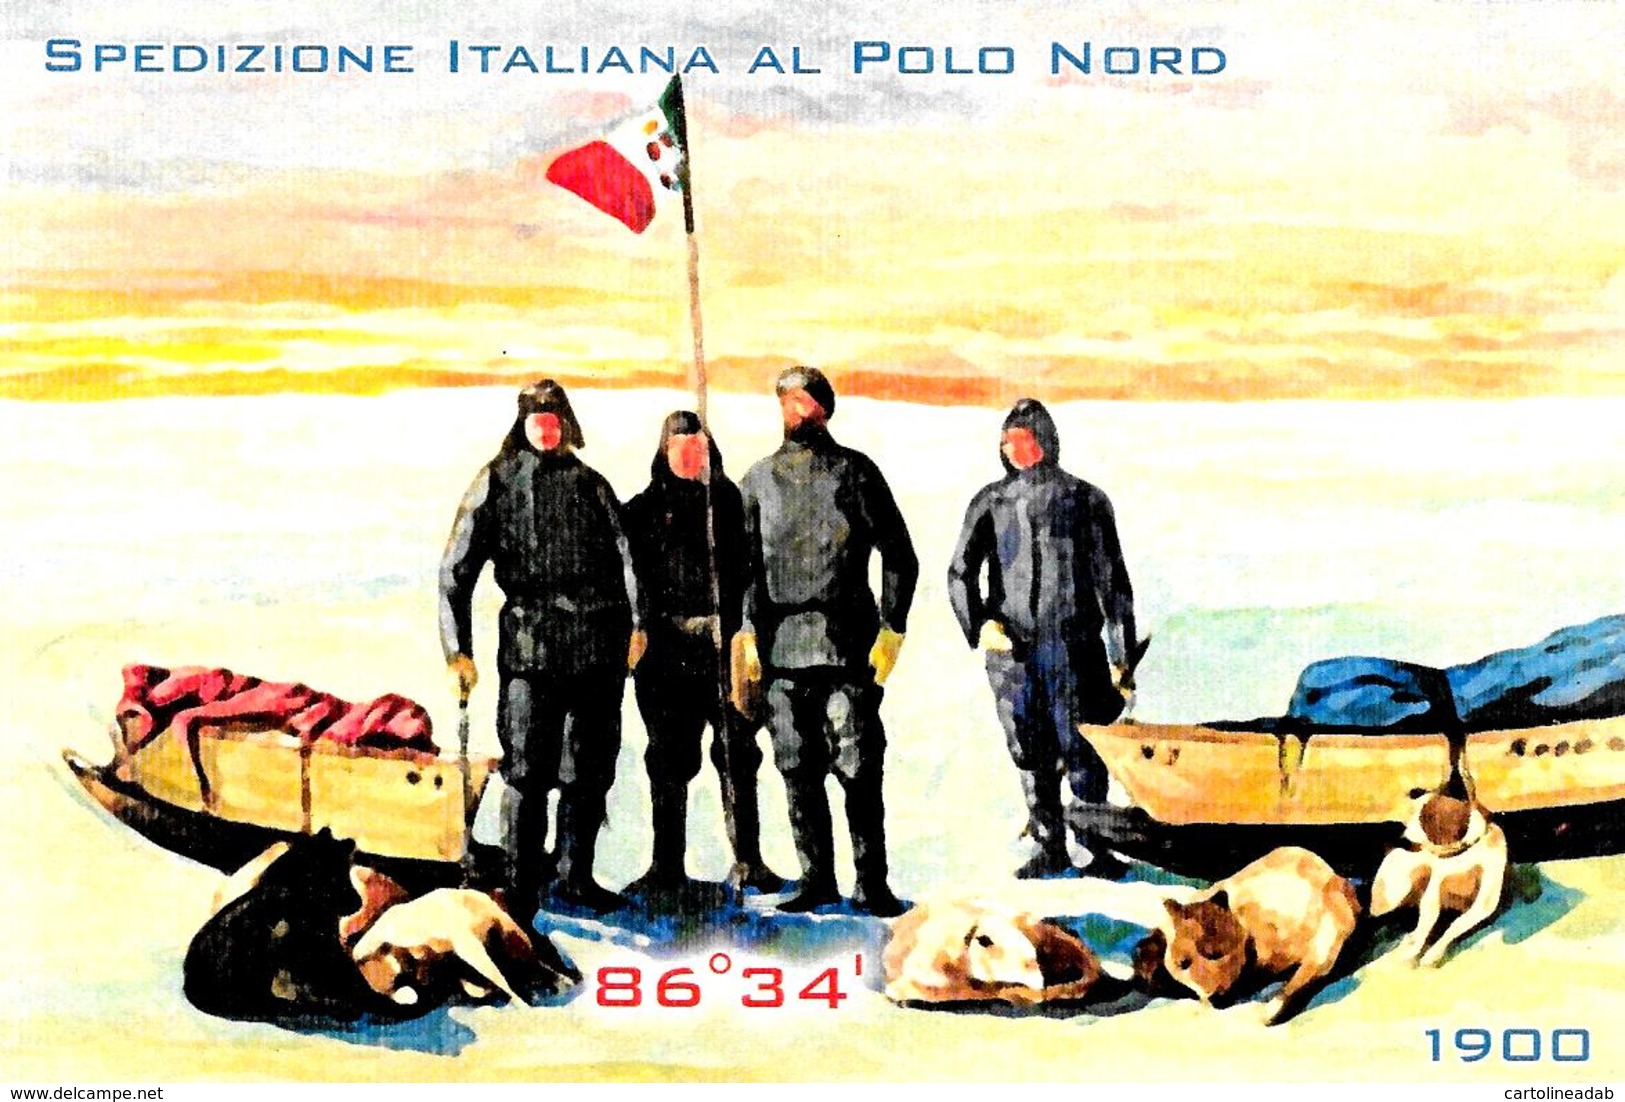 [MD2784] CPM - SPEDIZIONE ITALIANA AL POLO NORD - EDIZIONI APAC - 2010 - Non Viaggiata - Histoire